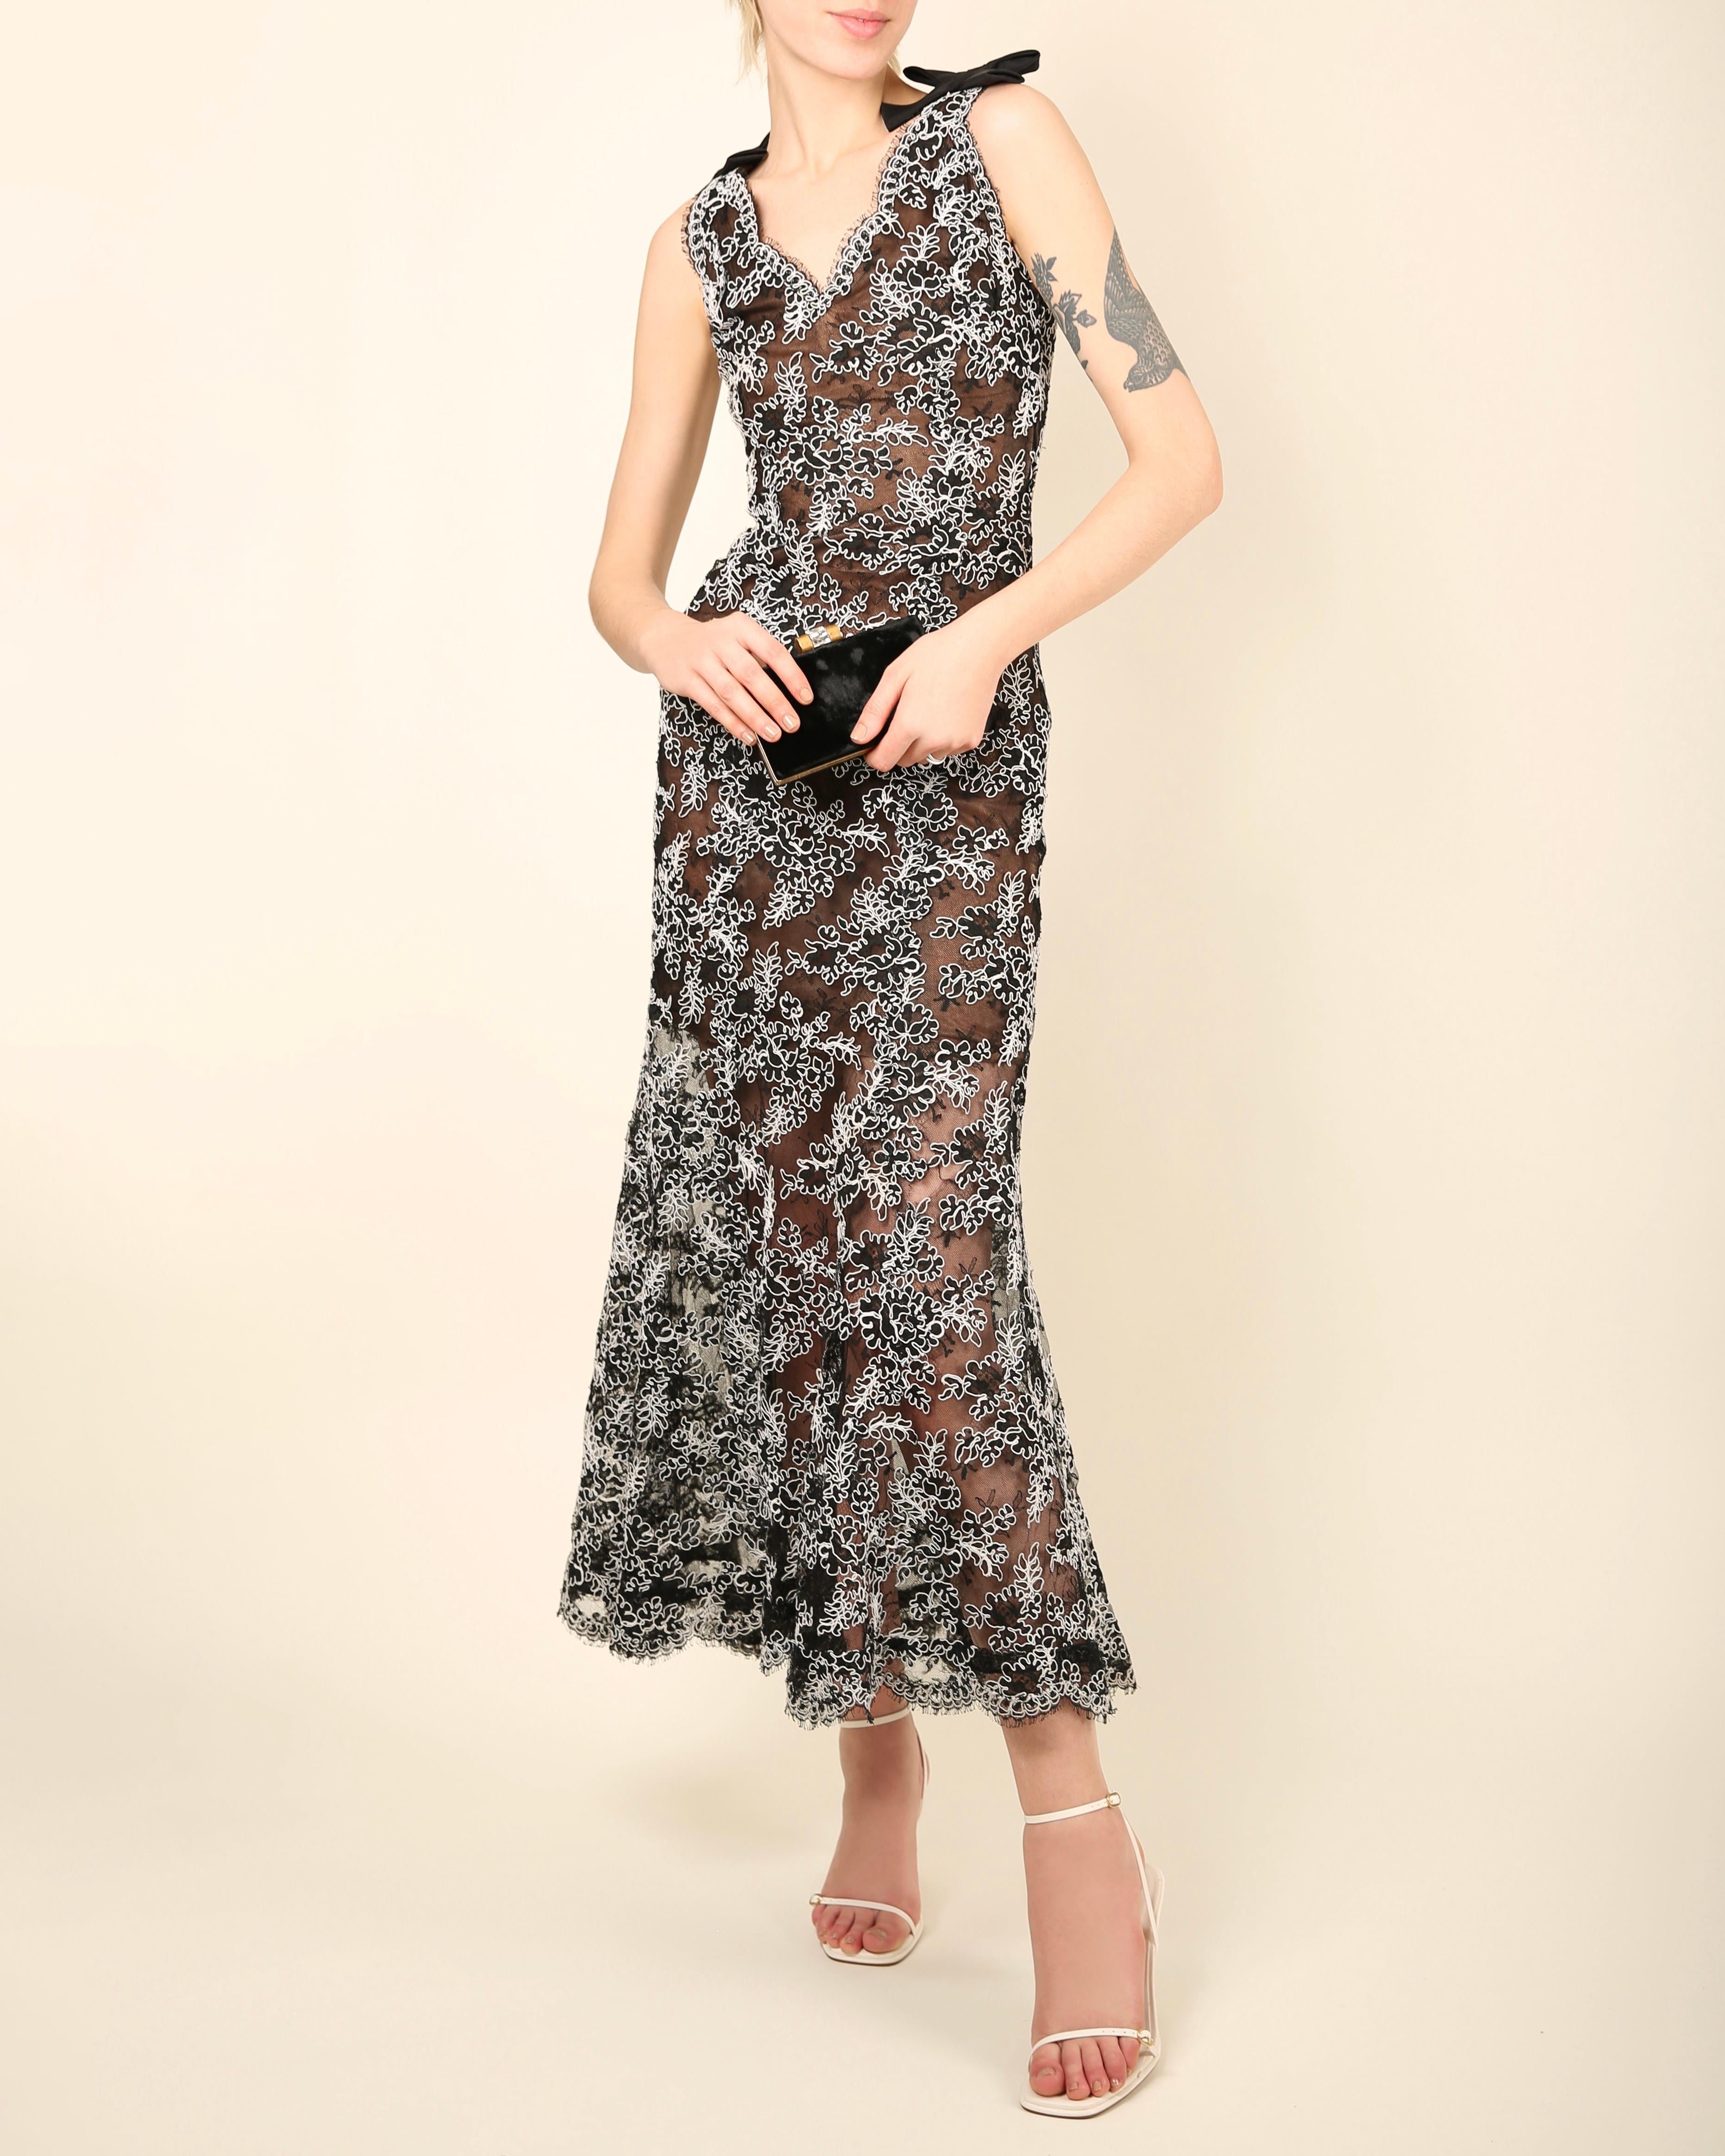 Oscar de la Renta vintage black white lace floral embroidered gown maxi dress 1